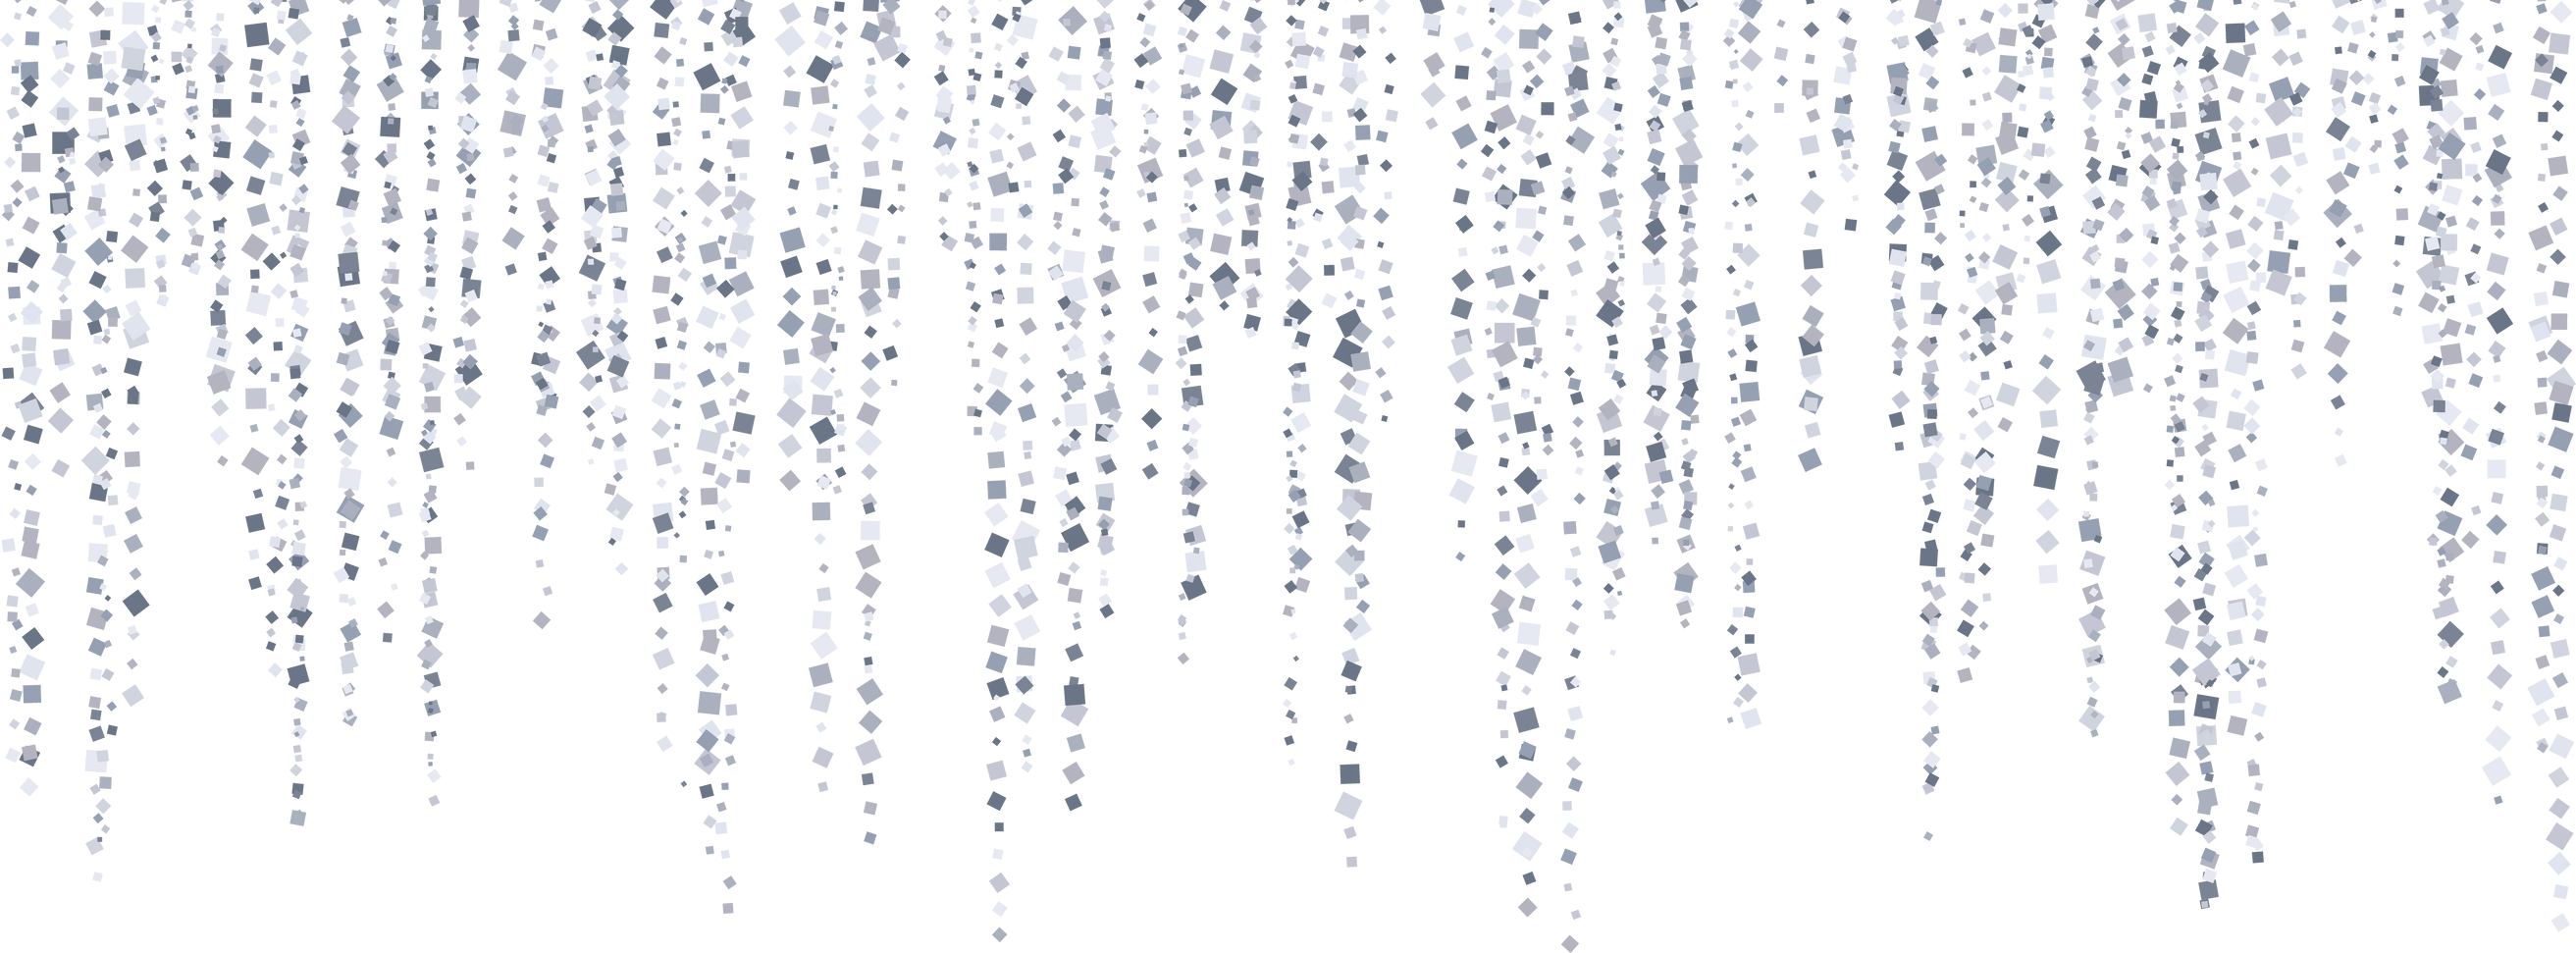 Silver glitter rain garland decoration